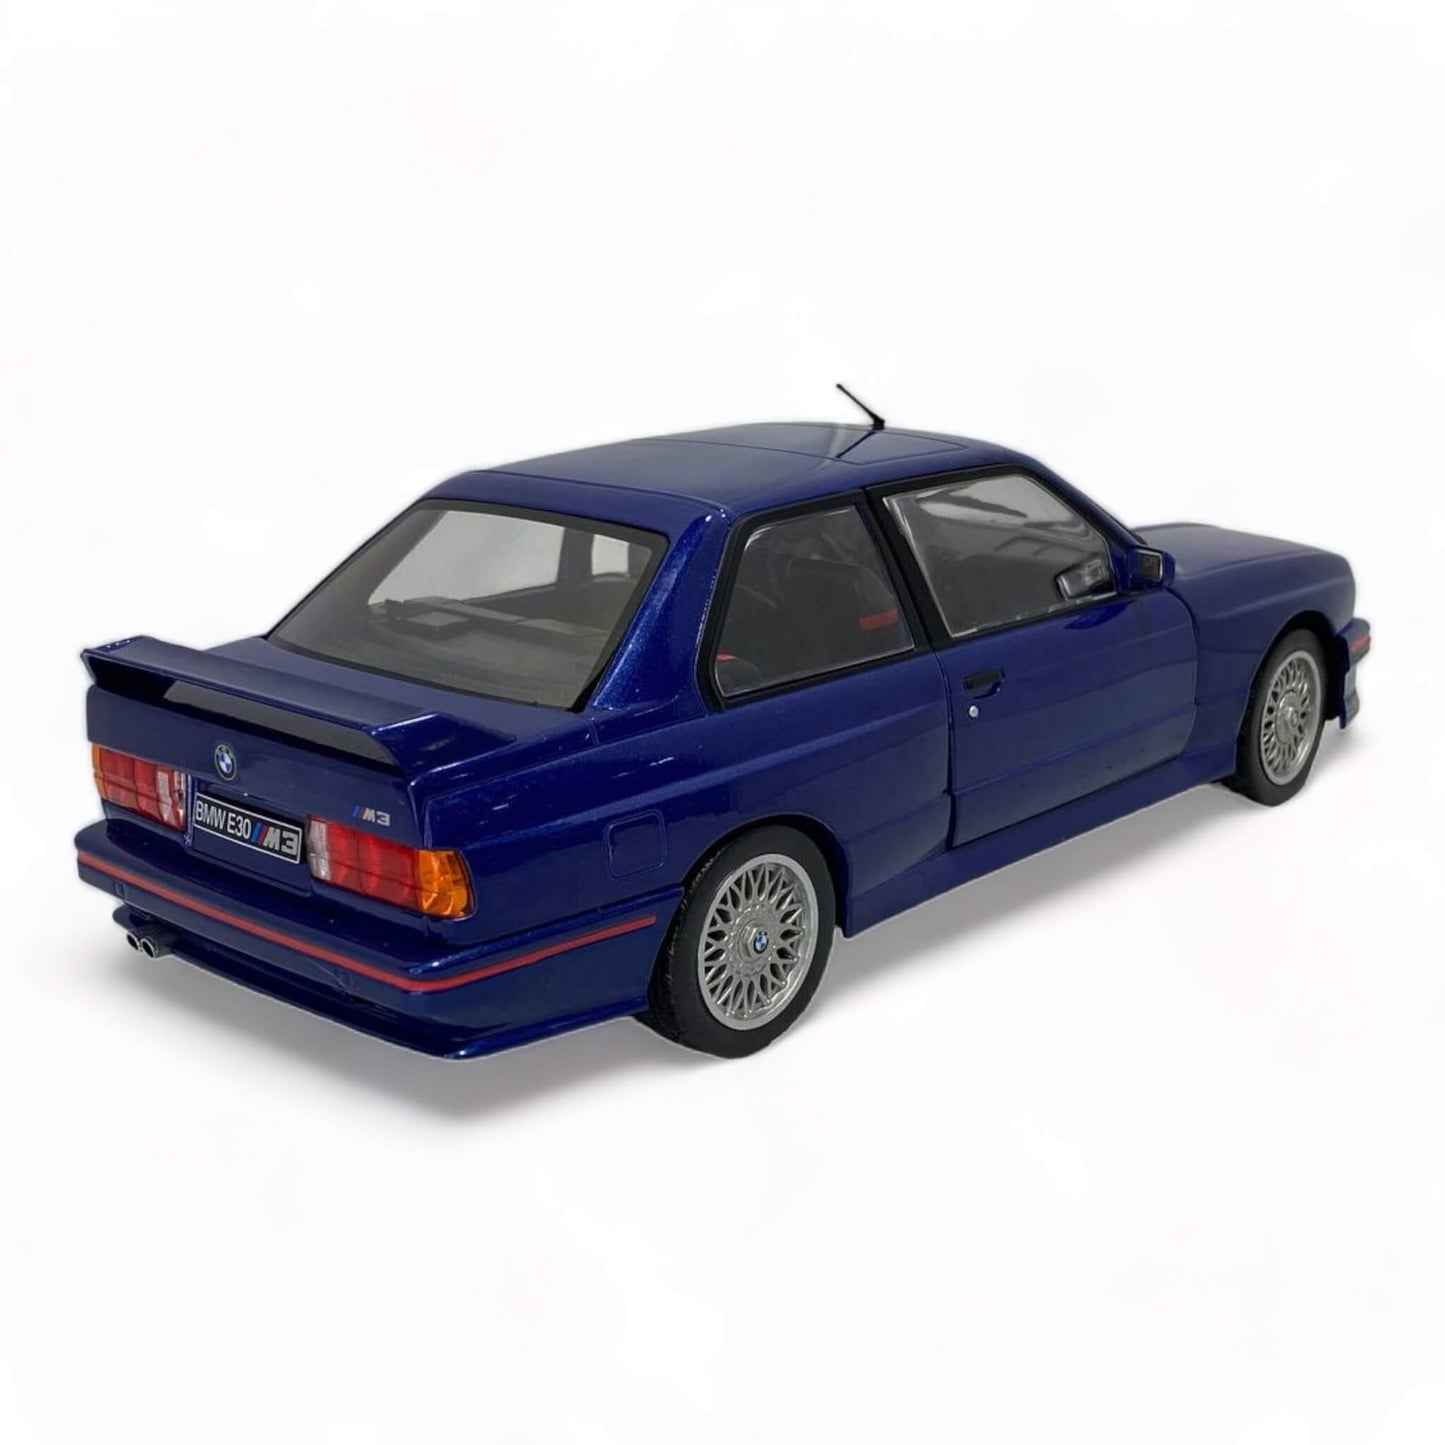 1/18 Diecast BMW M3 E30 Blue Blue Solido Scale Model Car Dturamn Dubai UAE|Sold in Dturman.com Dubai UAE.